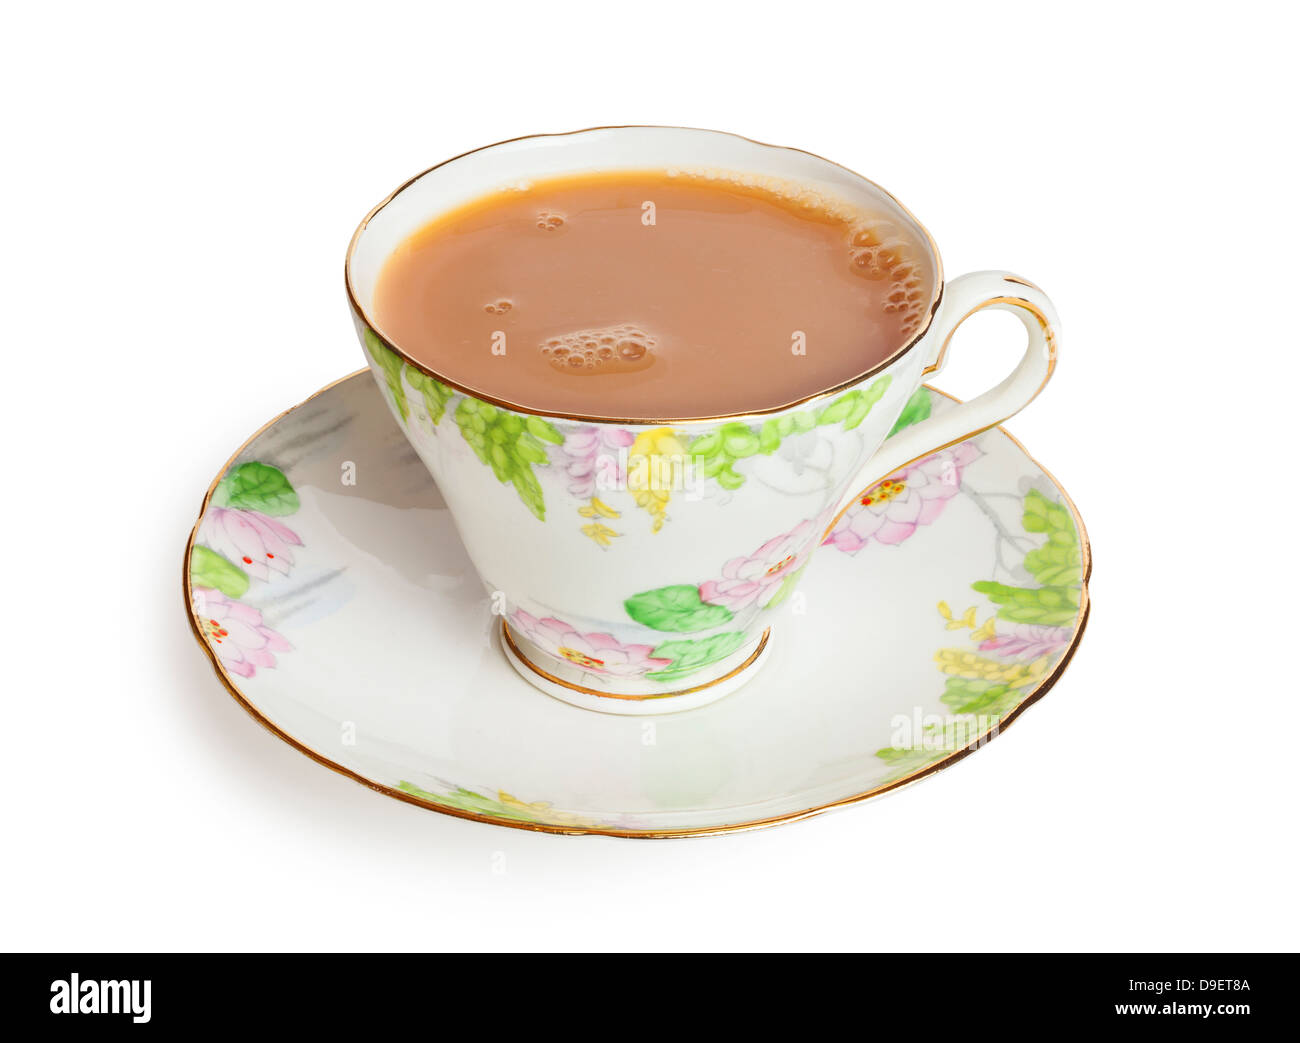 Tasse Tee mit Milch in einem hübschen Bone China Tasse frisch gegossen mit Luftblasen auf Oberfläche, von vorne nach hinten Fokus, isoliert auf... Stockfoto